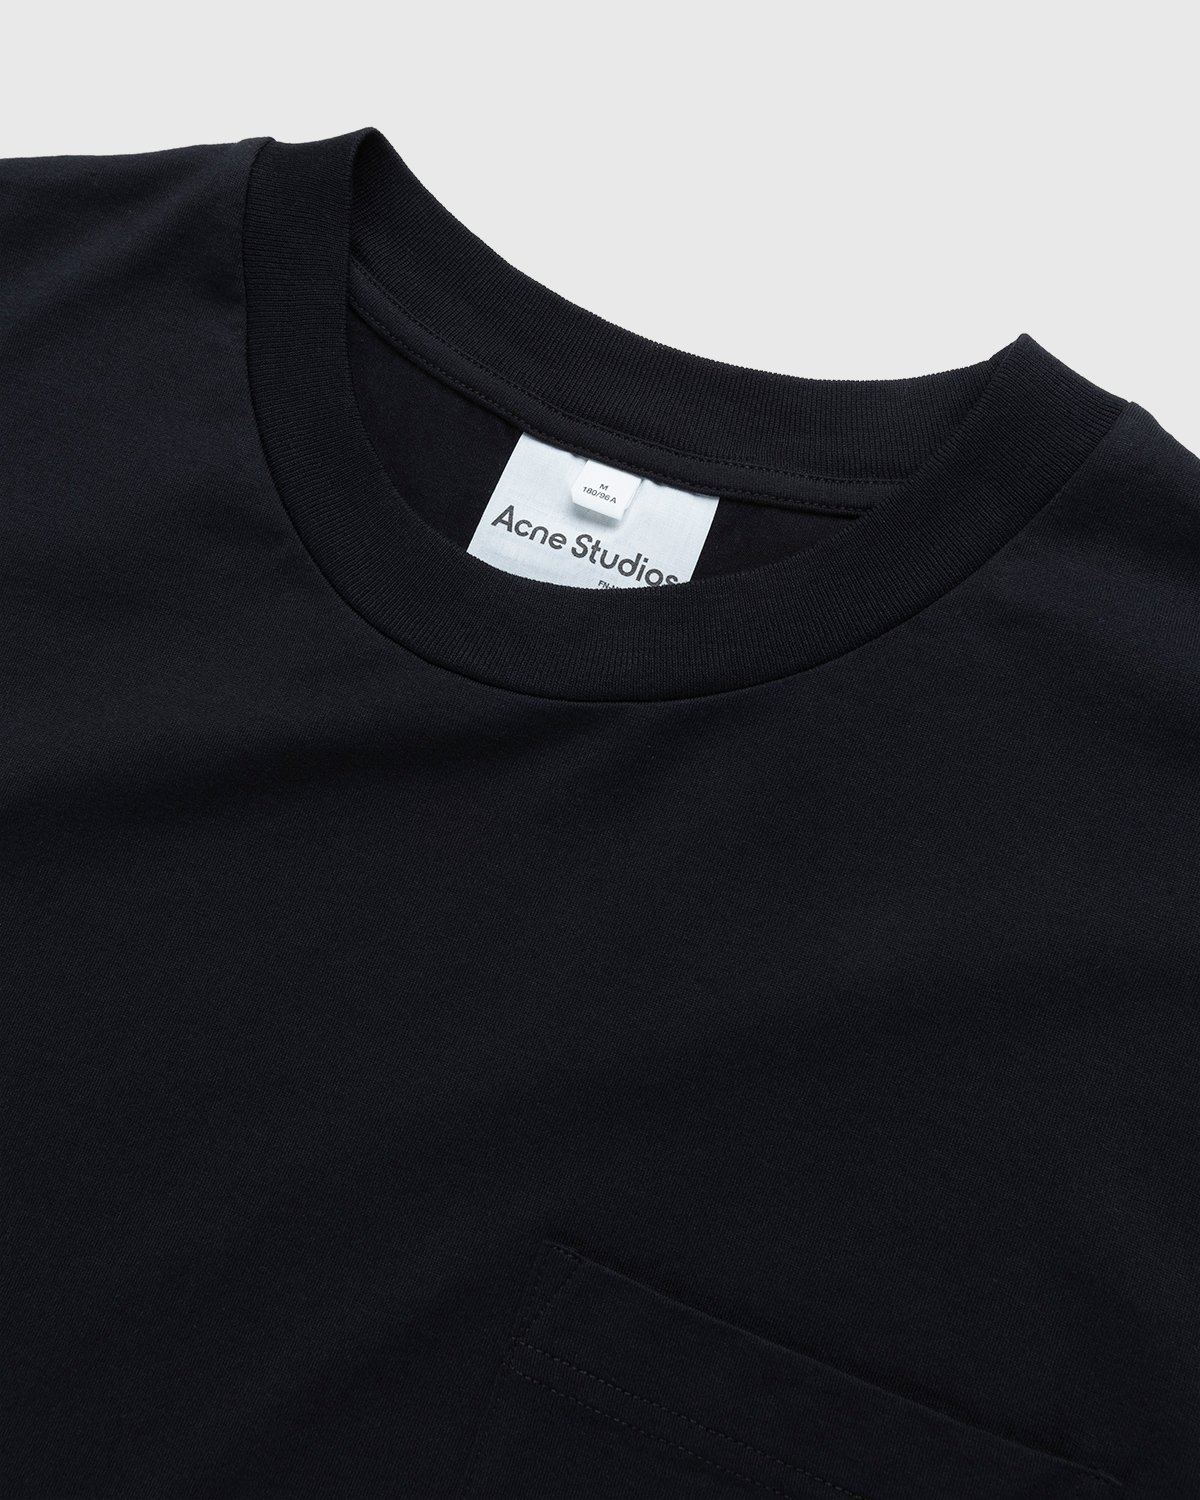 Acne Studios - Short Sleeve Pocket T-Shirt Black - Clothing - Black - Image 4